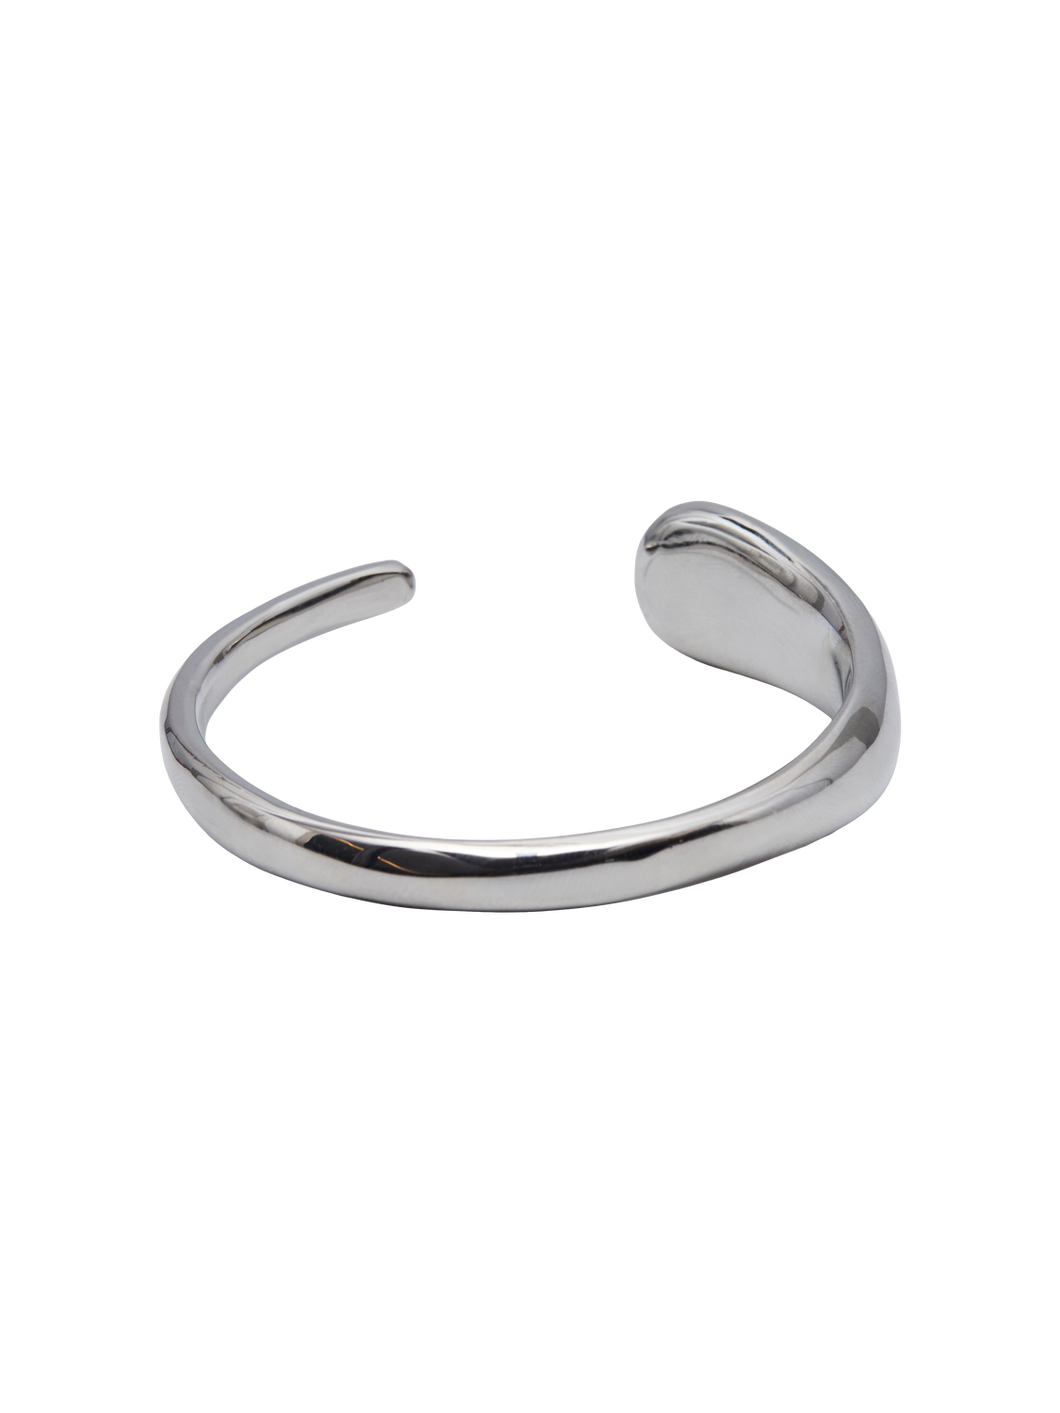 PCPOELE Bracelets - Silver Colour